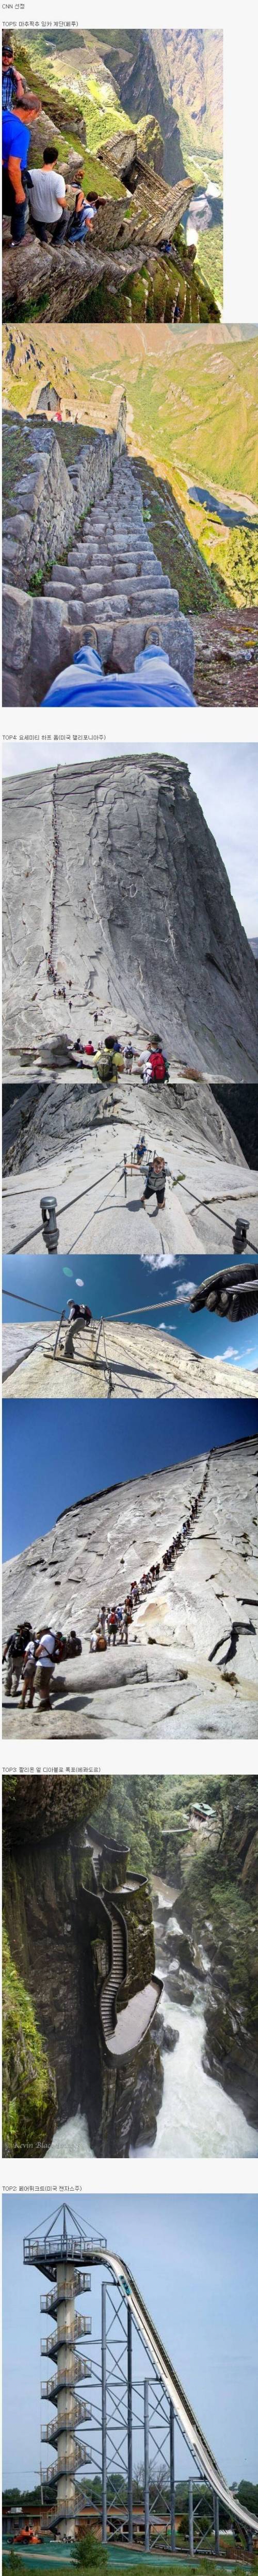 12 세계에서 가장 위험한 계단.jpg